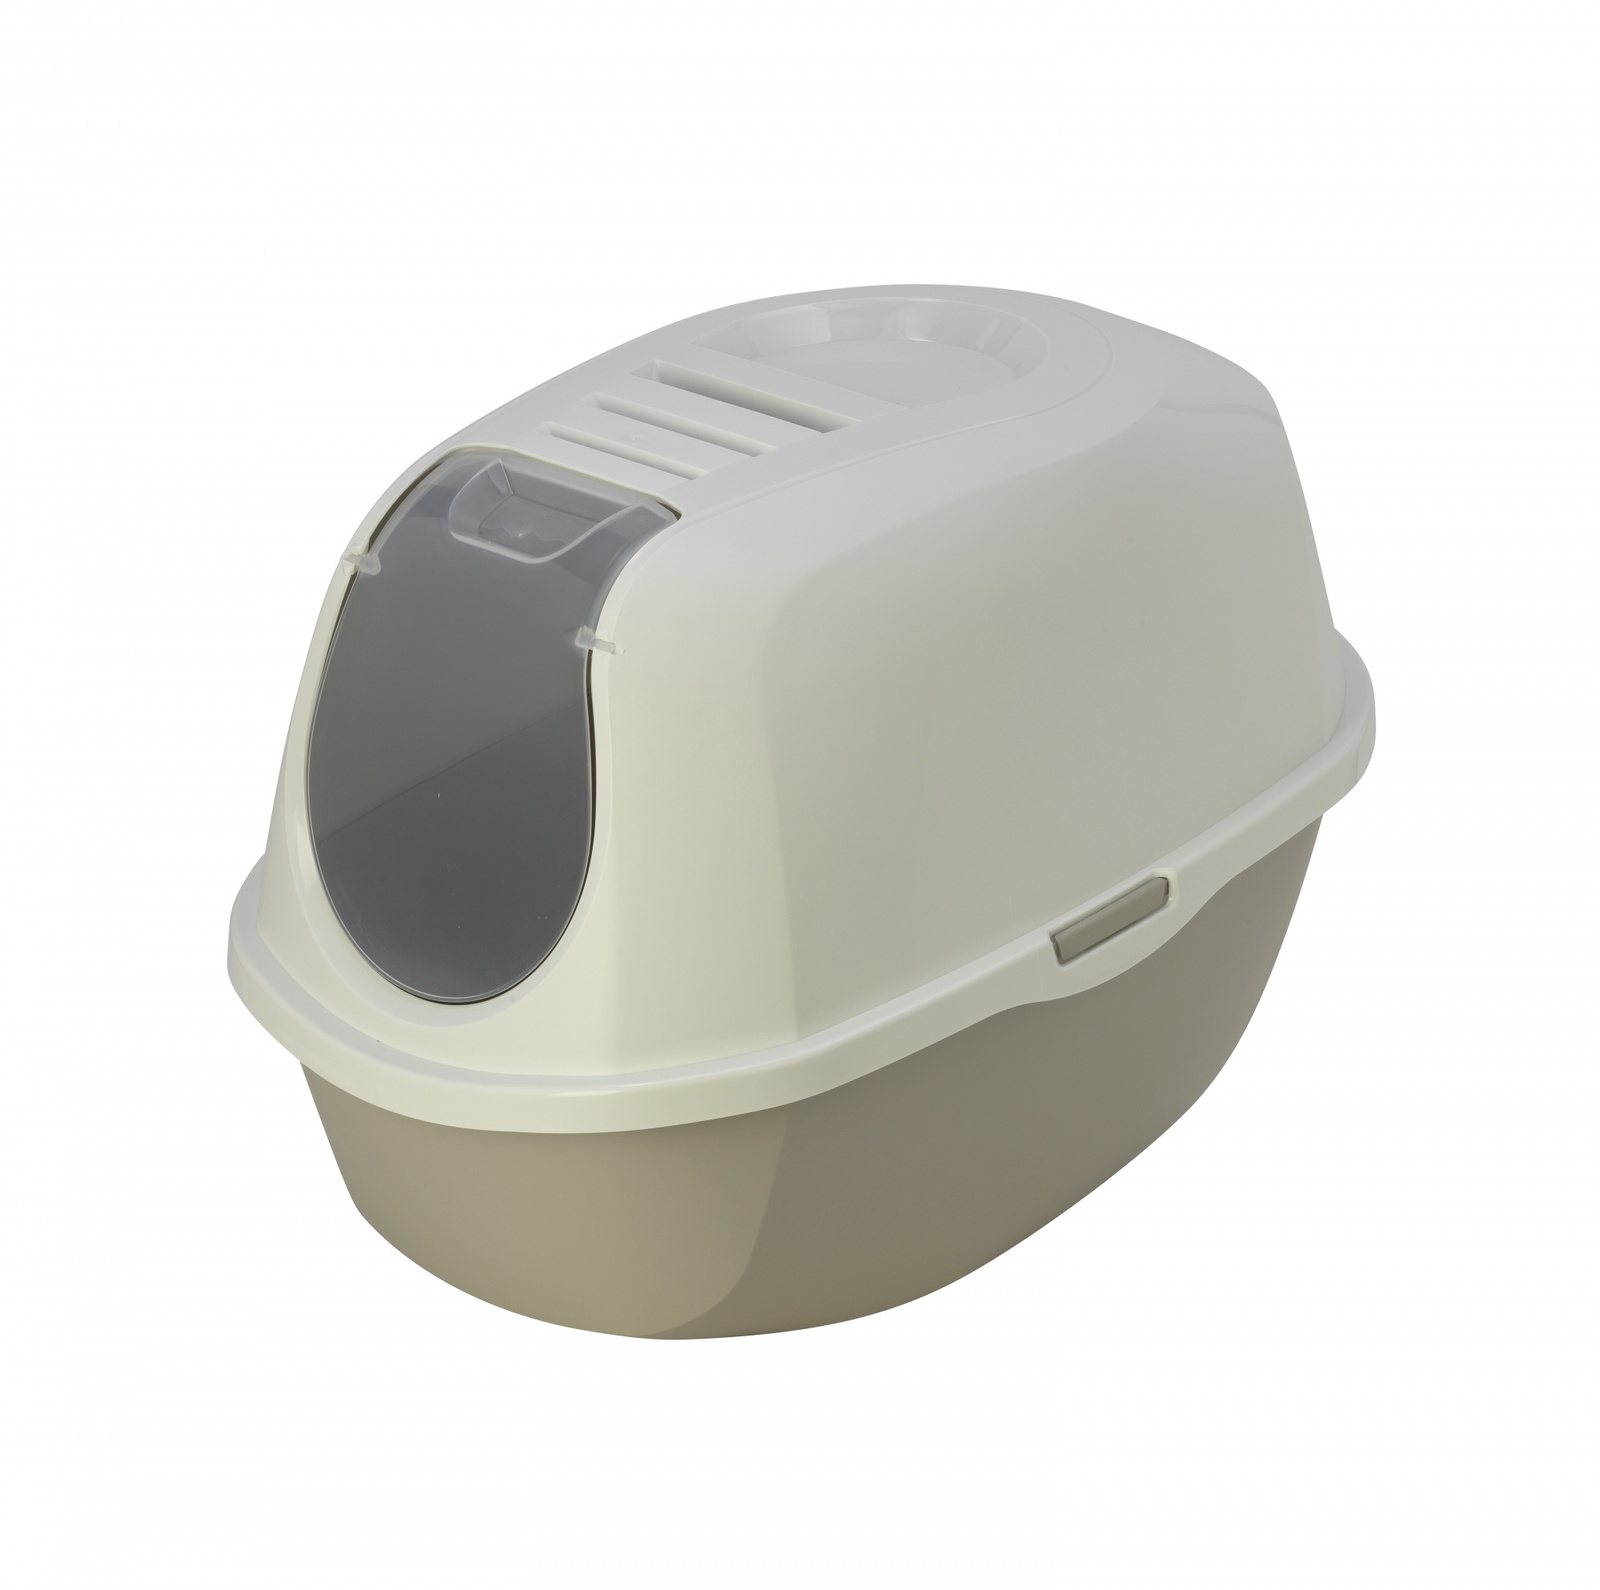 Moderna туалет-домик SmartCat с угольным фильтром, 54х40х41см,  теплый серый (1,2 кг) Moderna туалет-домик SmartCat с угольным фильтром, 54х40х41см,  теплый серый (1,2 кг) - фото 1